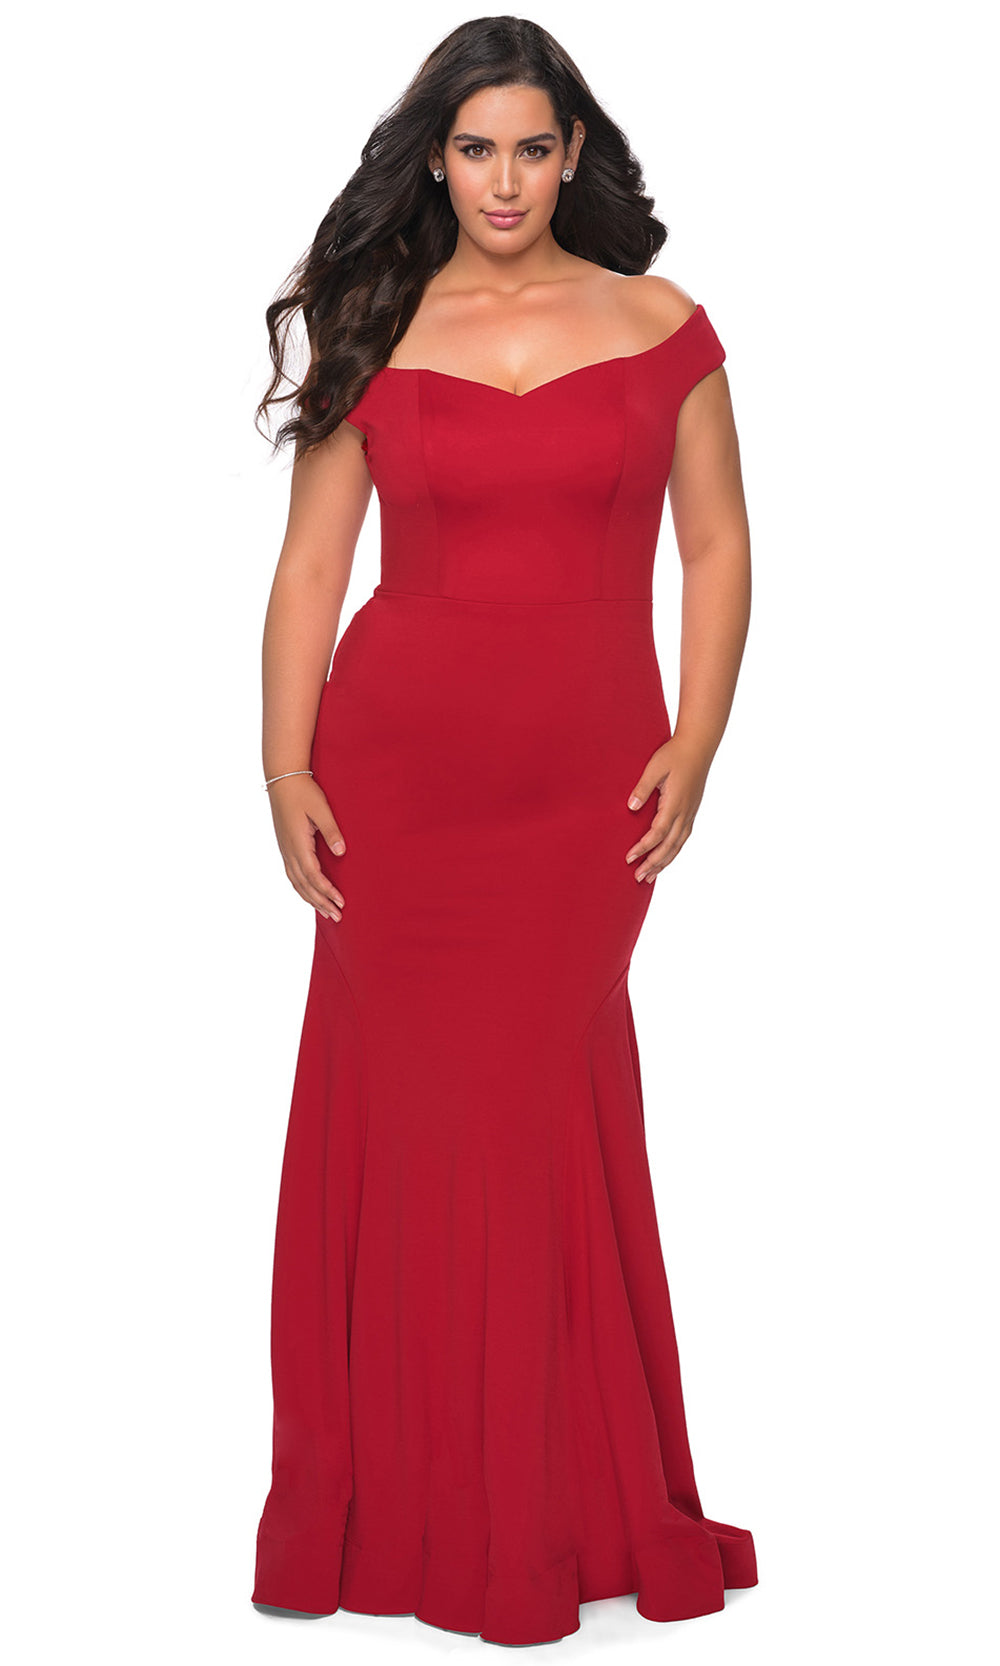 La Femme - 28963 Off Shoulder Bodice Jersey Dress In Red